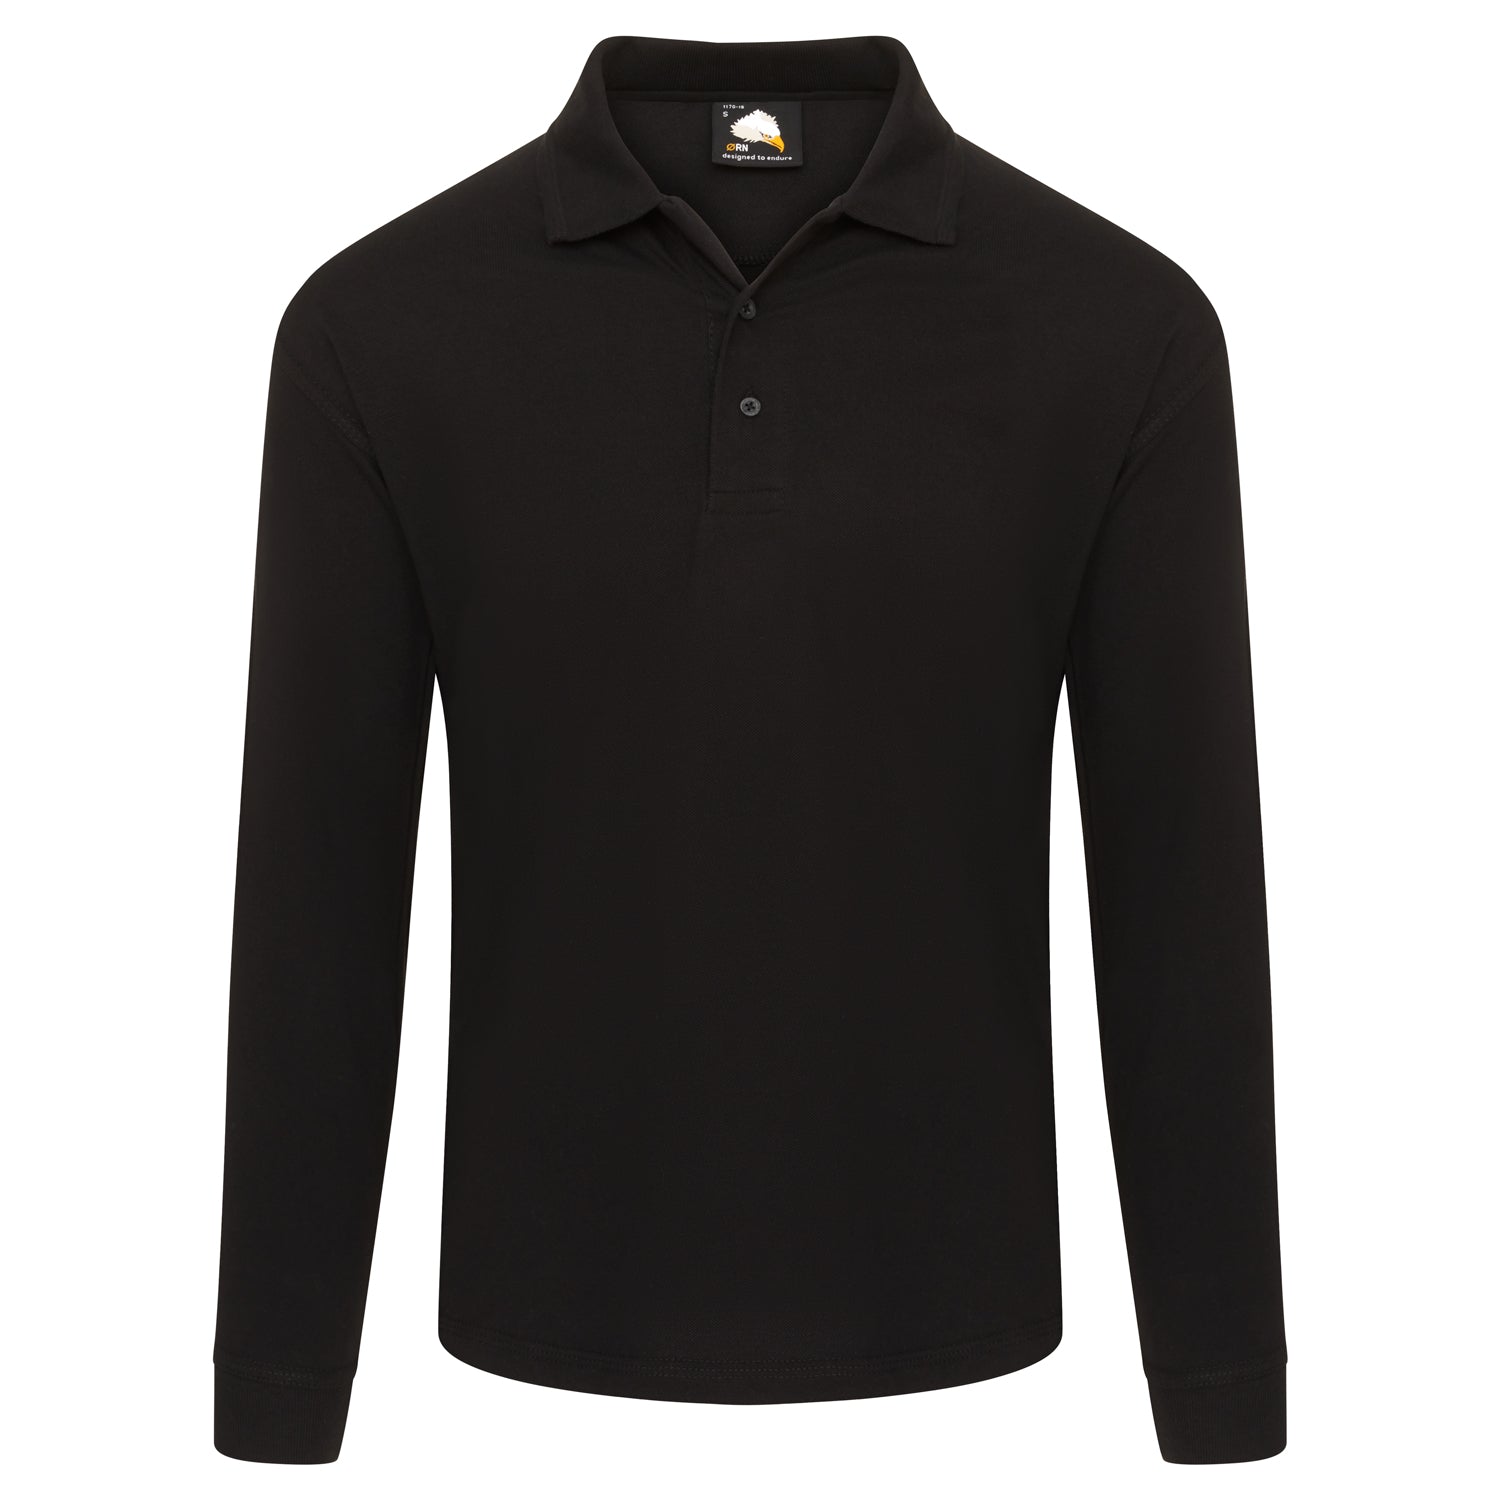 ORN Weaver Long Sleeved Poloshirt - Black